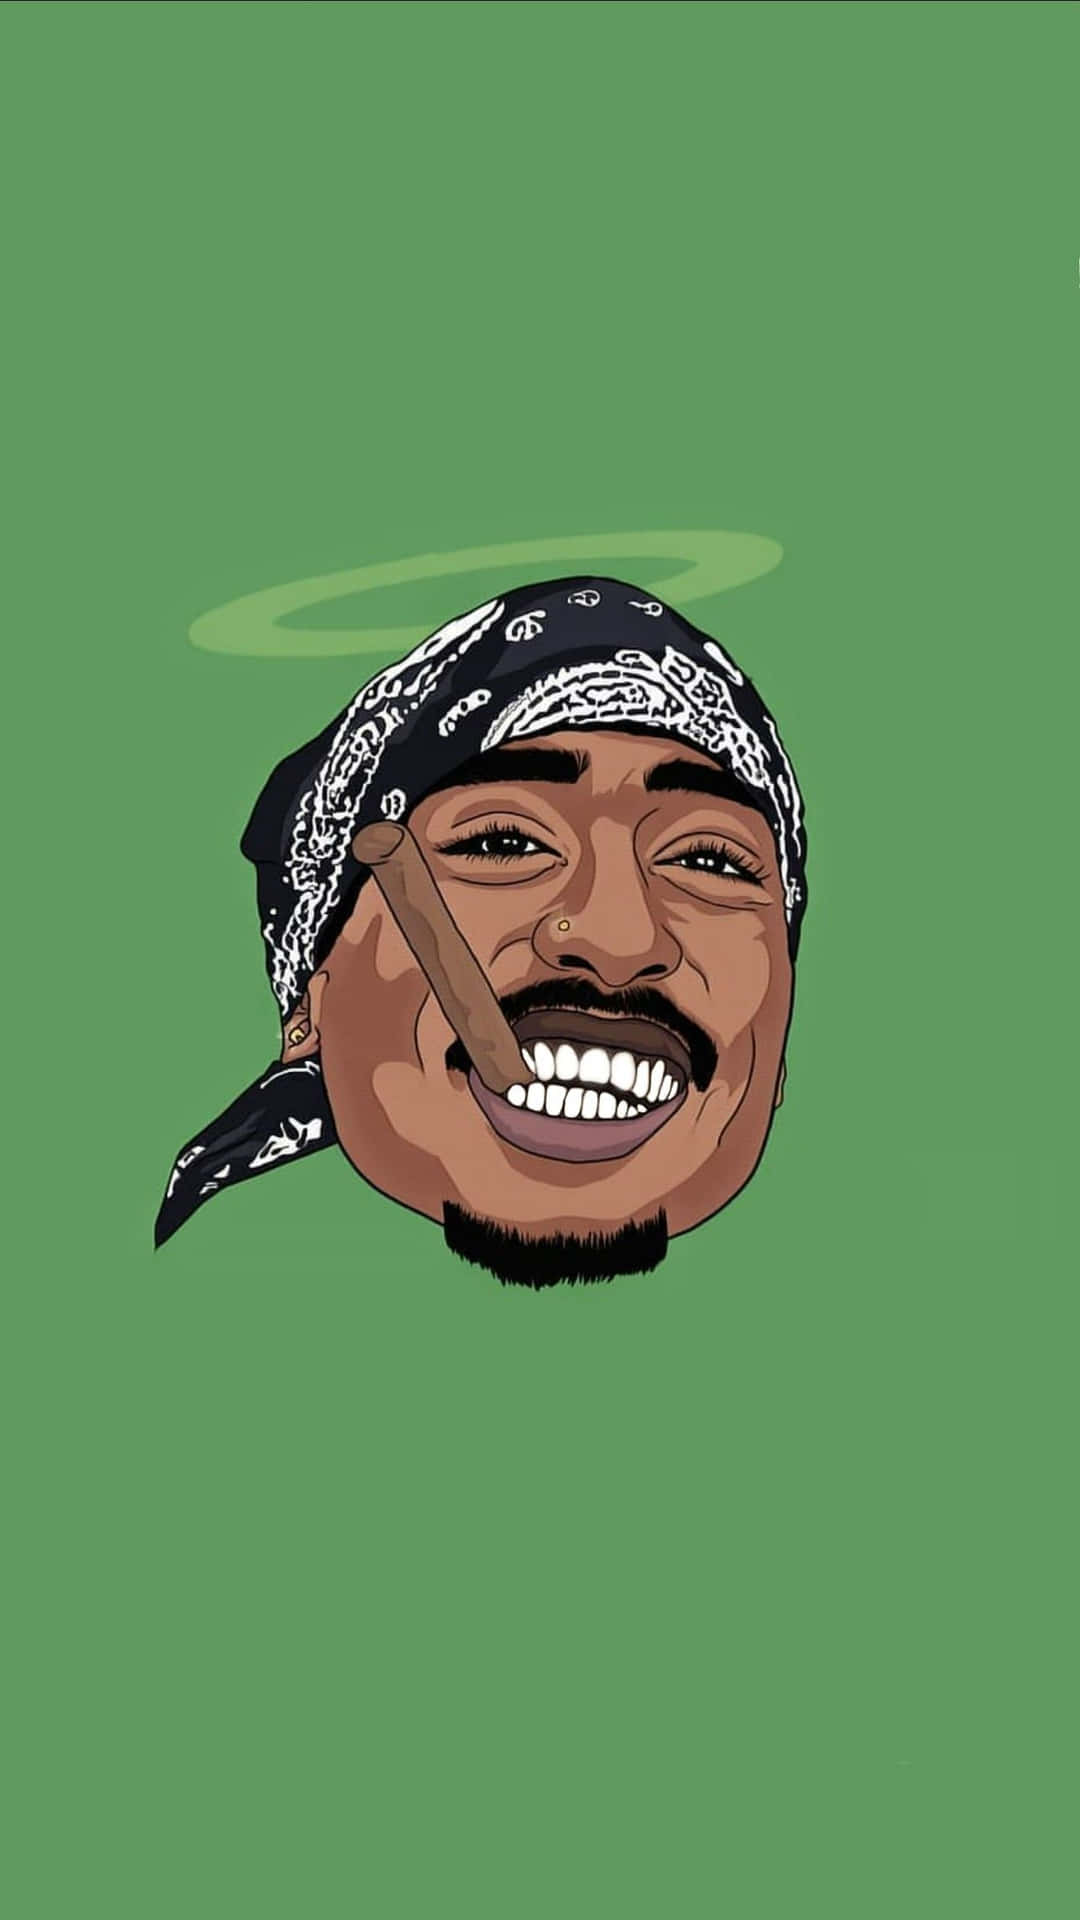 Un'illustrazionea Cartone Animato Dell'iconico Rapper Tupac Shakur. Sfondo